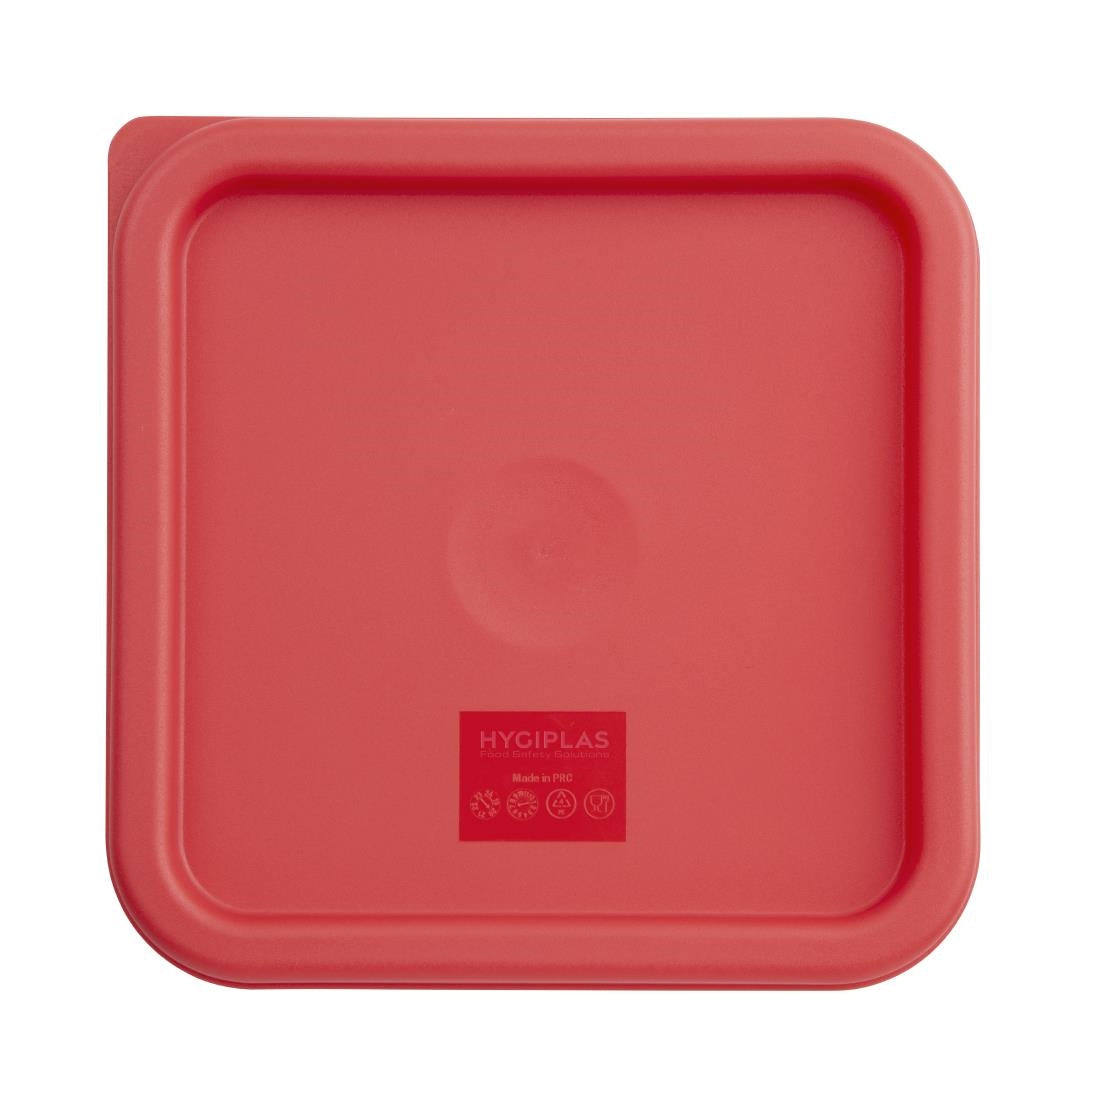 Vogue Square Food Storage Container Lid Red Medium